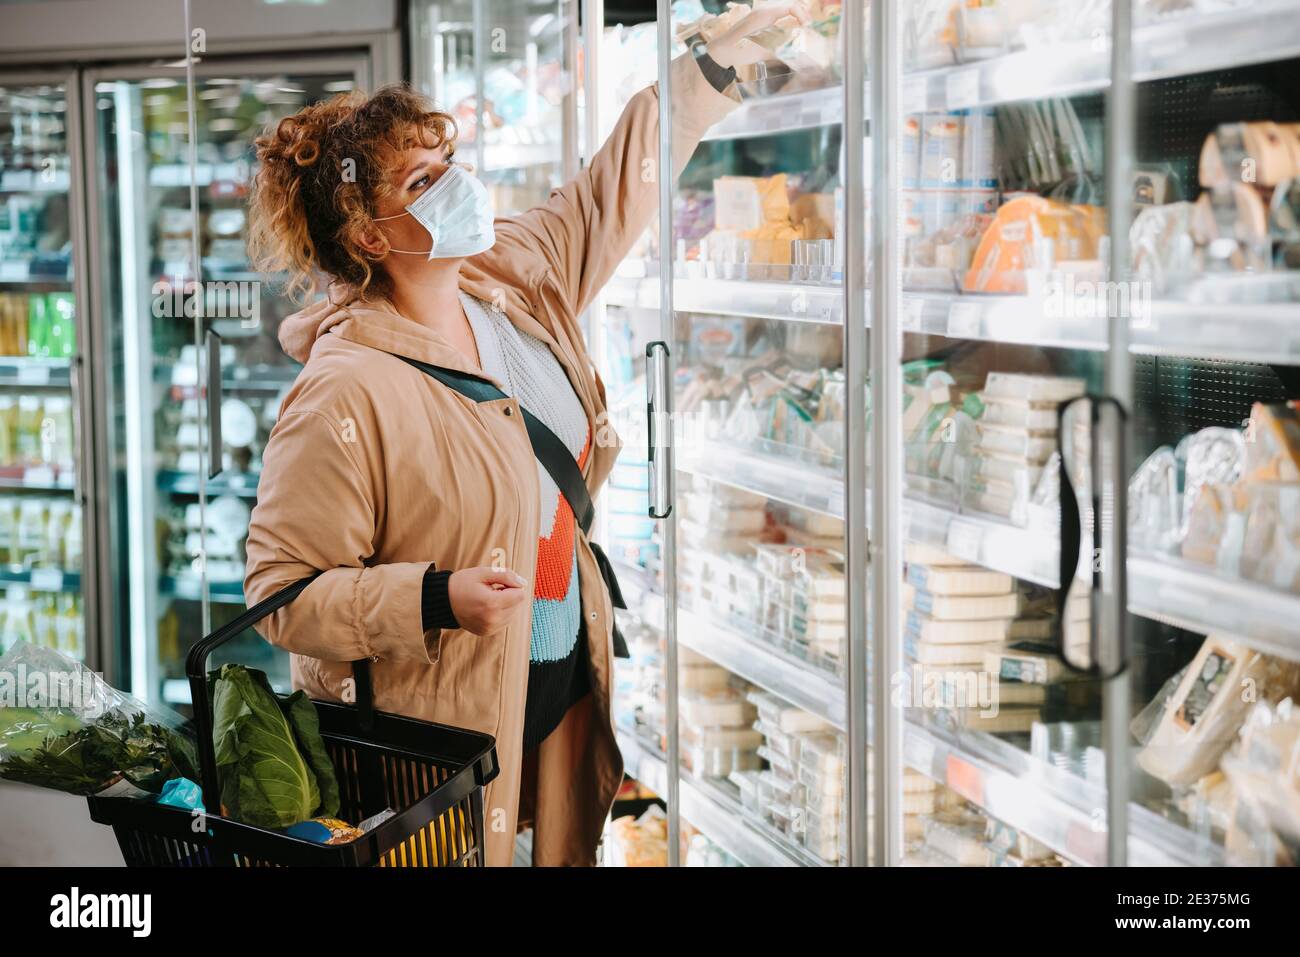 Frau mit Gesichtsmaske kauft Lebensmittel aus einem Supermarkt. Weibliche Kunden einkaufen im Supermarkt während Pandemie. Stockfoto